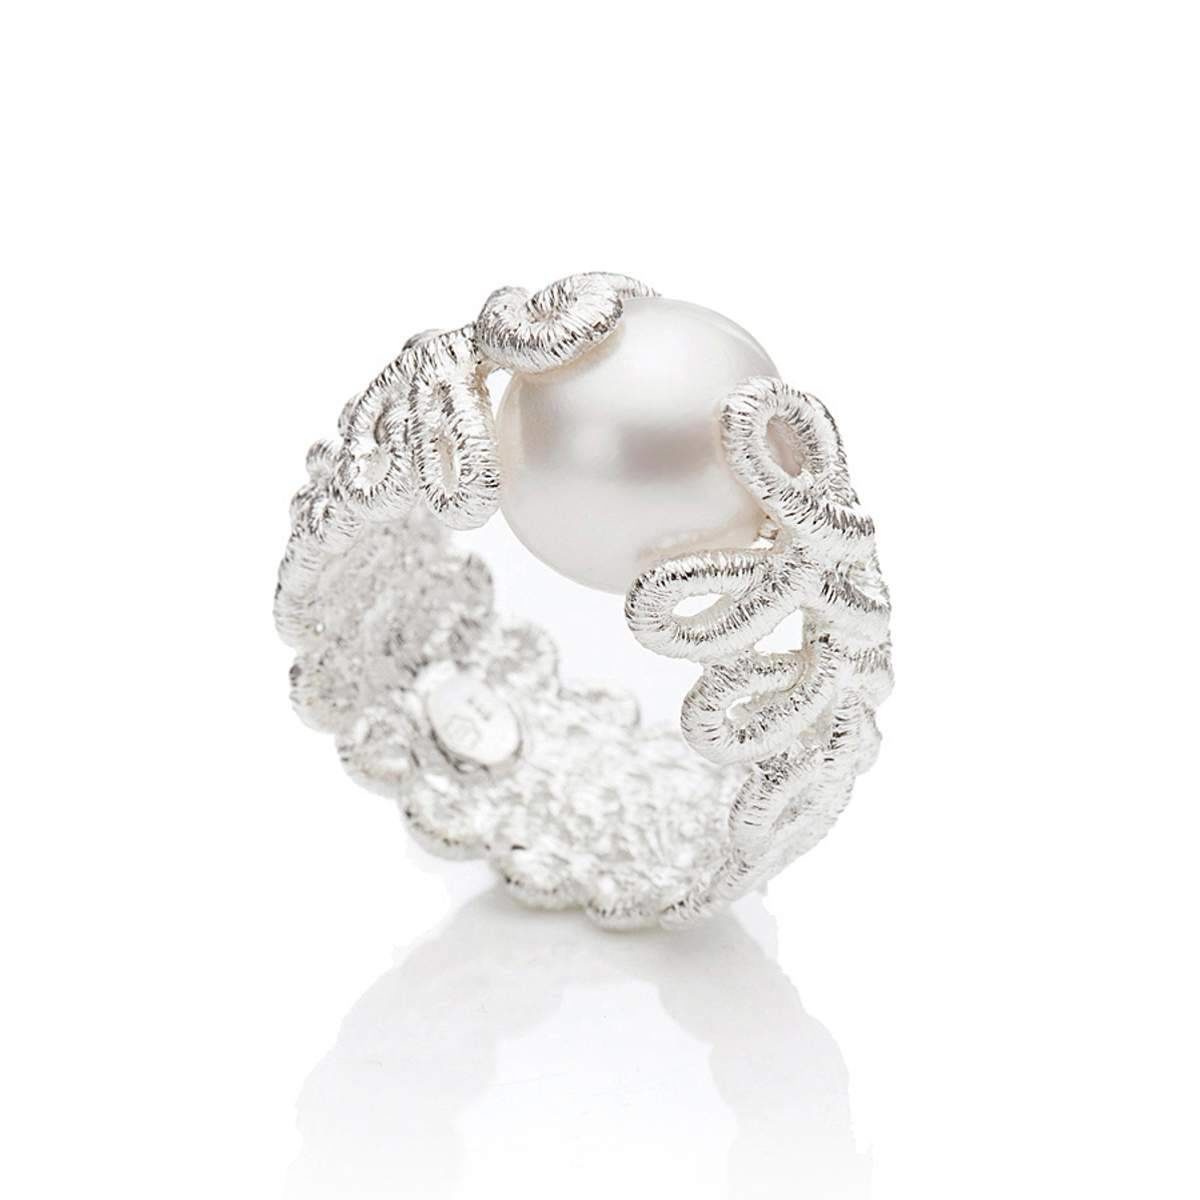 Brautschmuck Ring "Pique Dame" in Silber. Exklusiver Spitzenschmuck für die perfekte Hochzeit.